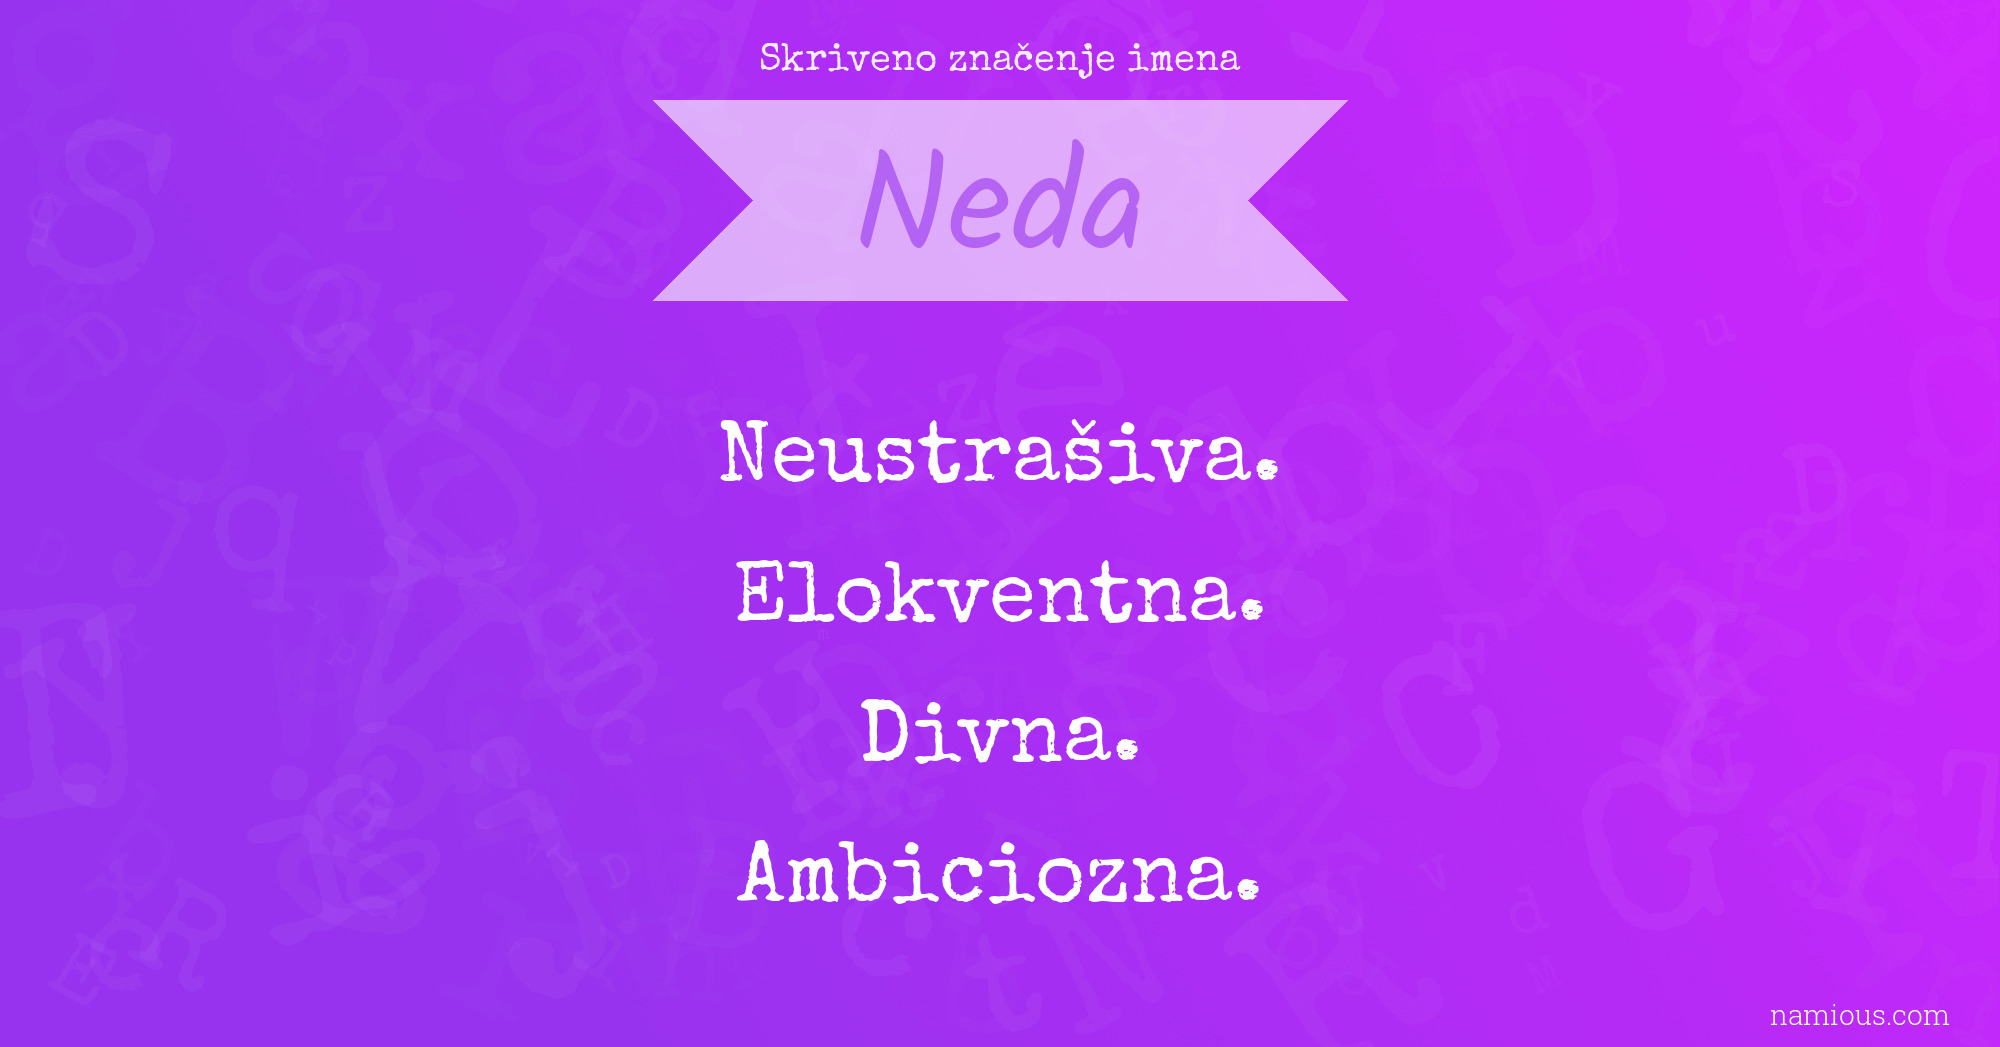 Skriveno značenje imena Neda